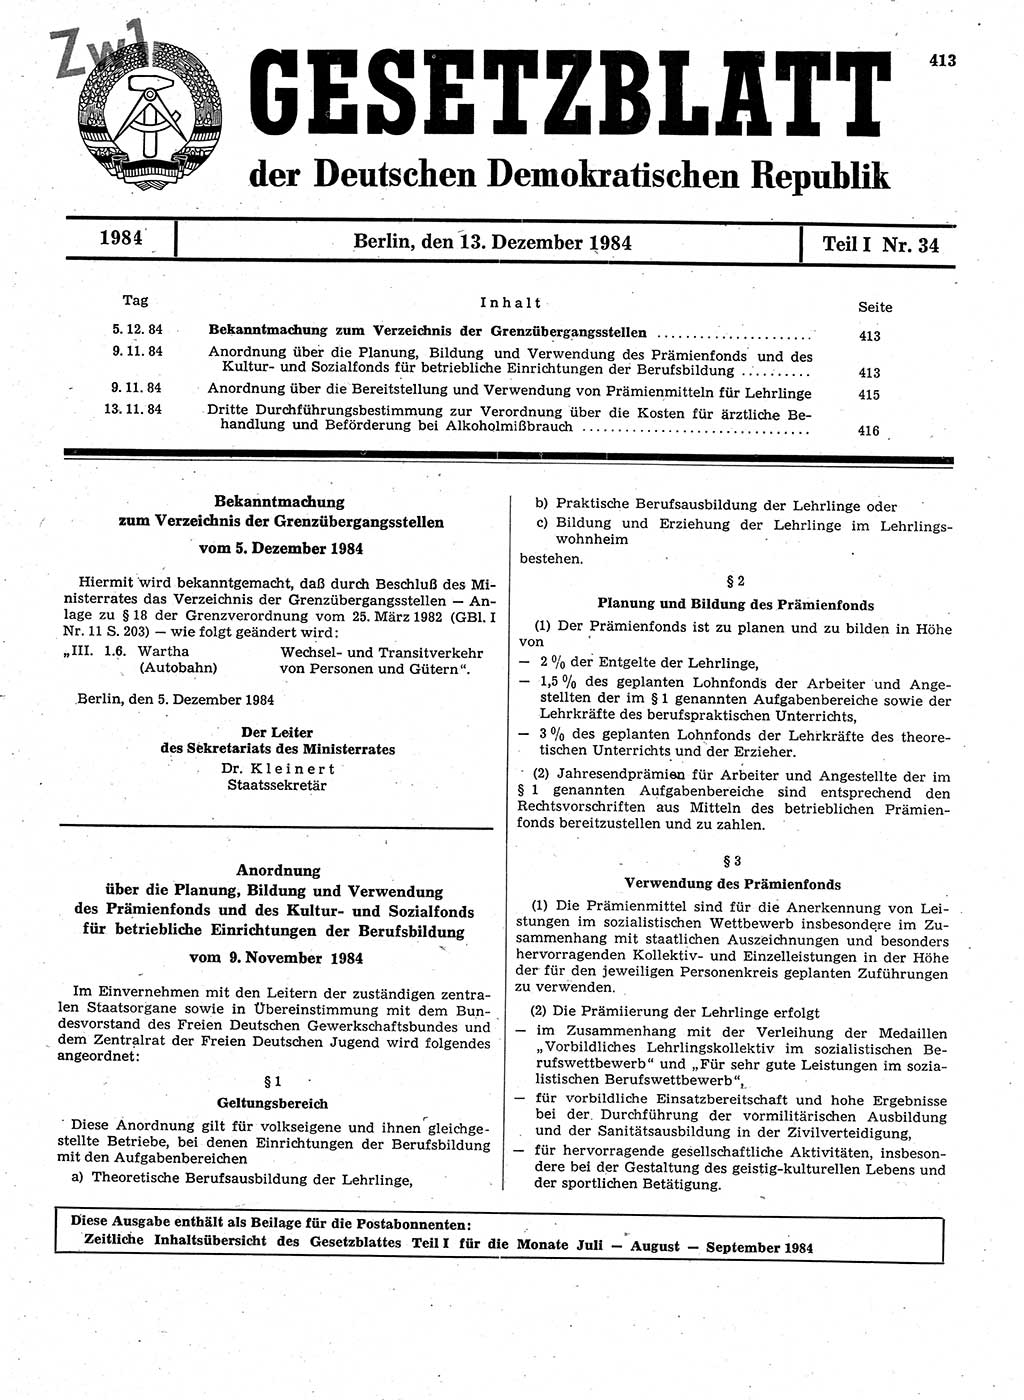 Gesetzblatt (GBl.) der Deutschen Demokratischen Republik (DDR) Teil Ⅰ 1984, Seite 413 (GBl. DDR Ⅰ 1984, S. 413)